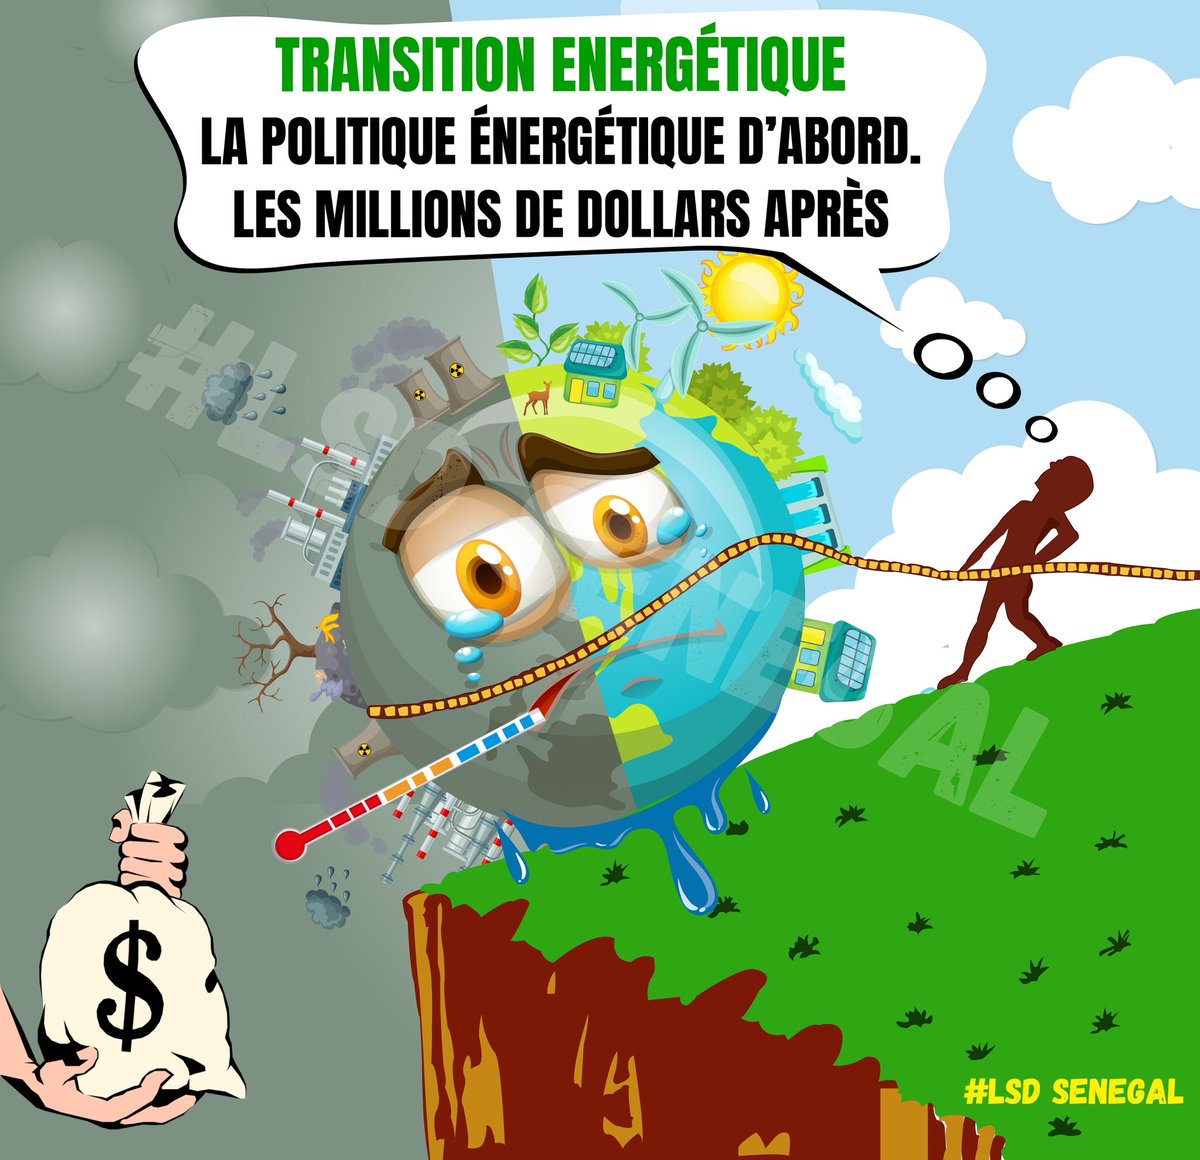 #Transitionénergétique - la politique énergétique d’abord les millions de dollars après ! 
#AFFBAM2023 

@Lsdsenegal @OpenSocietyAfr @both_ends @GAGGA_Alliance @FJS @WoMin_Africa @BIC_Updates @AccountCounsel @AfDB_Group